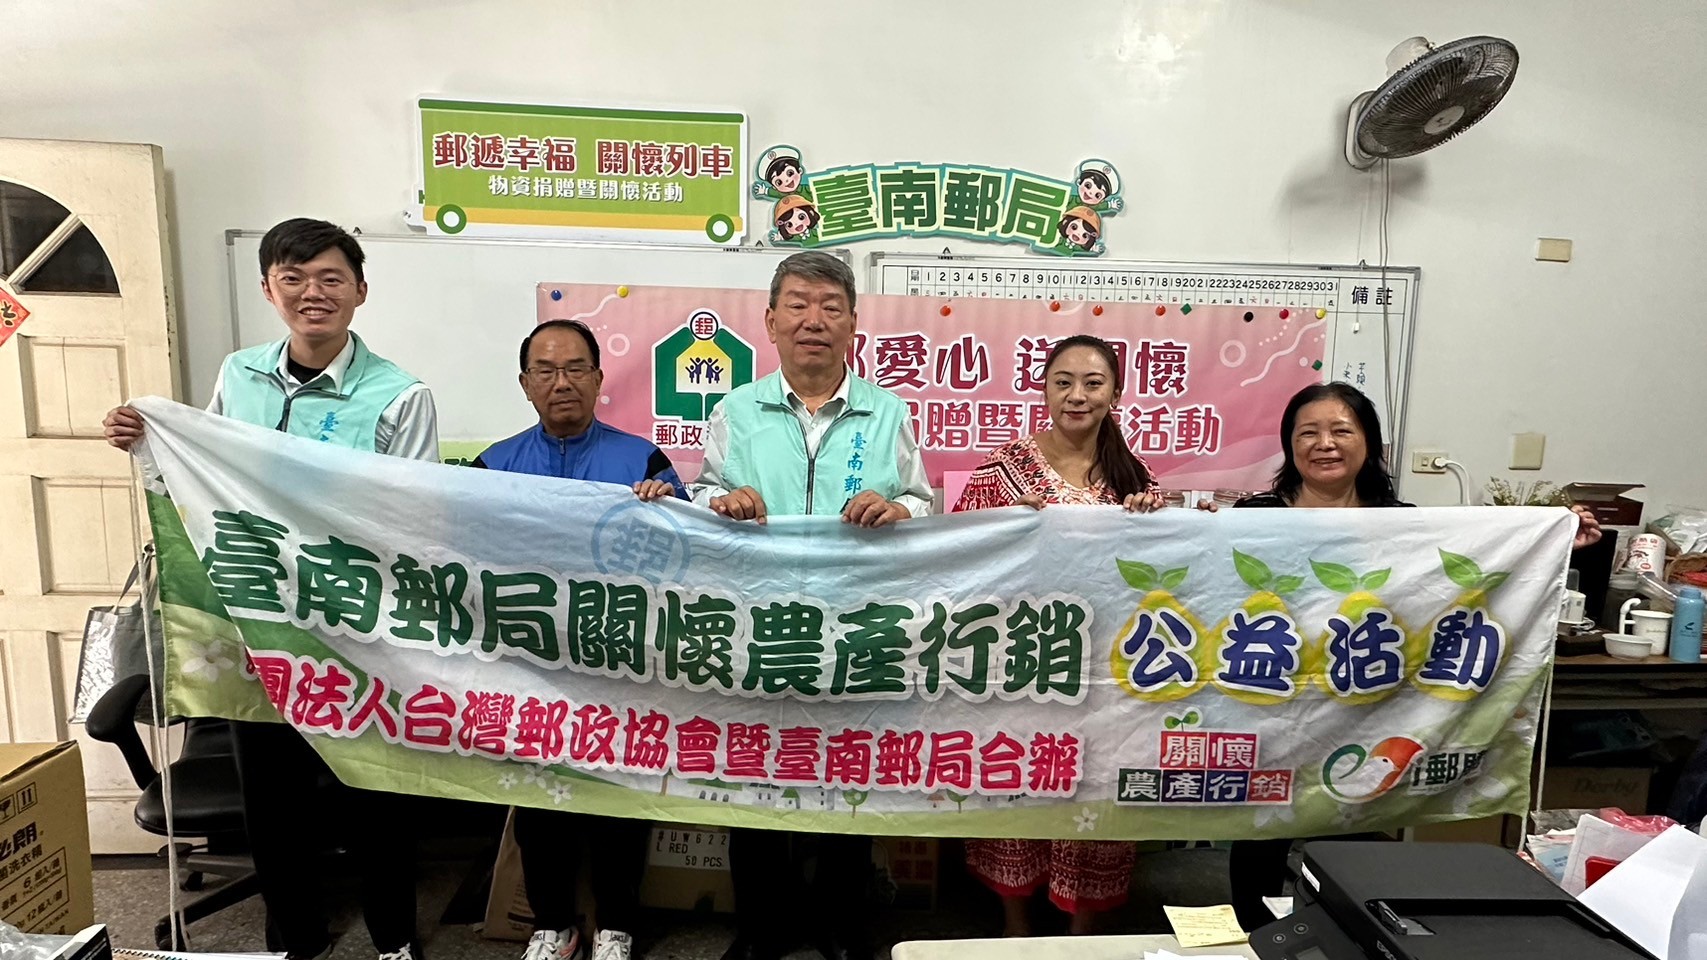 臺南郵局挺小農 行銷文旦捐贈物資關懷原住民永續發展協會 